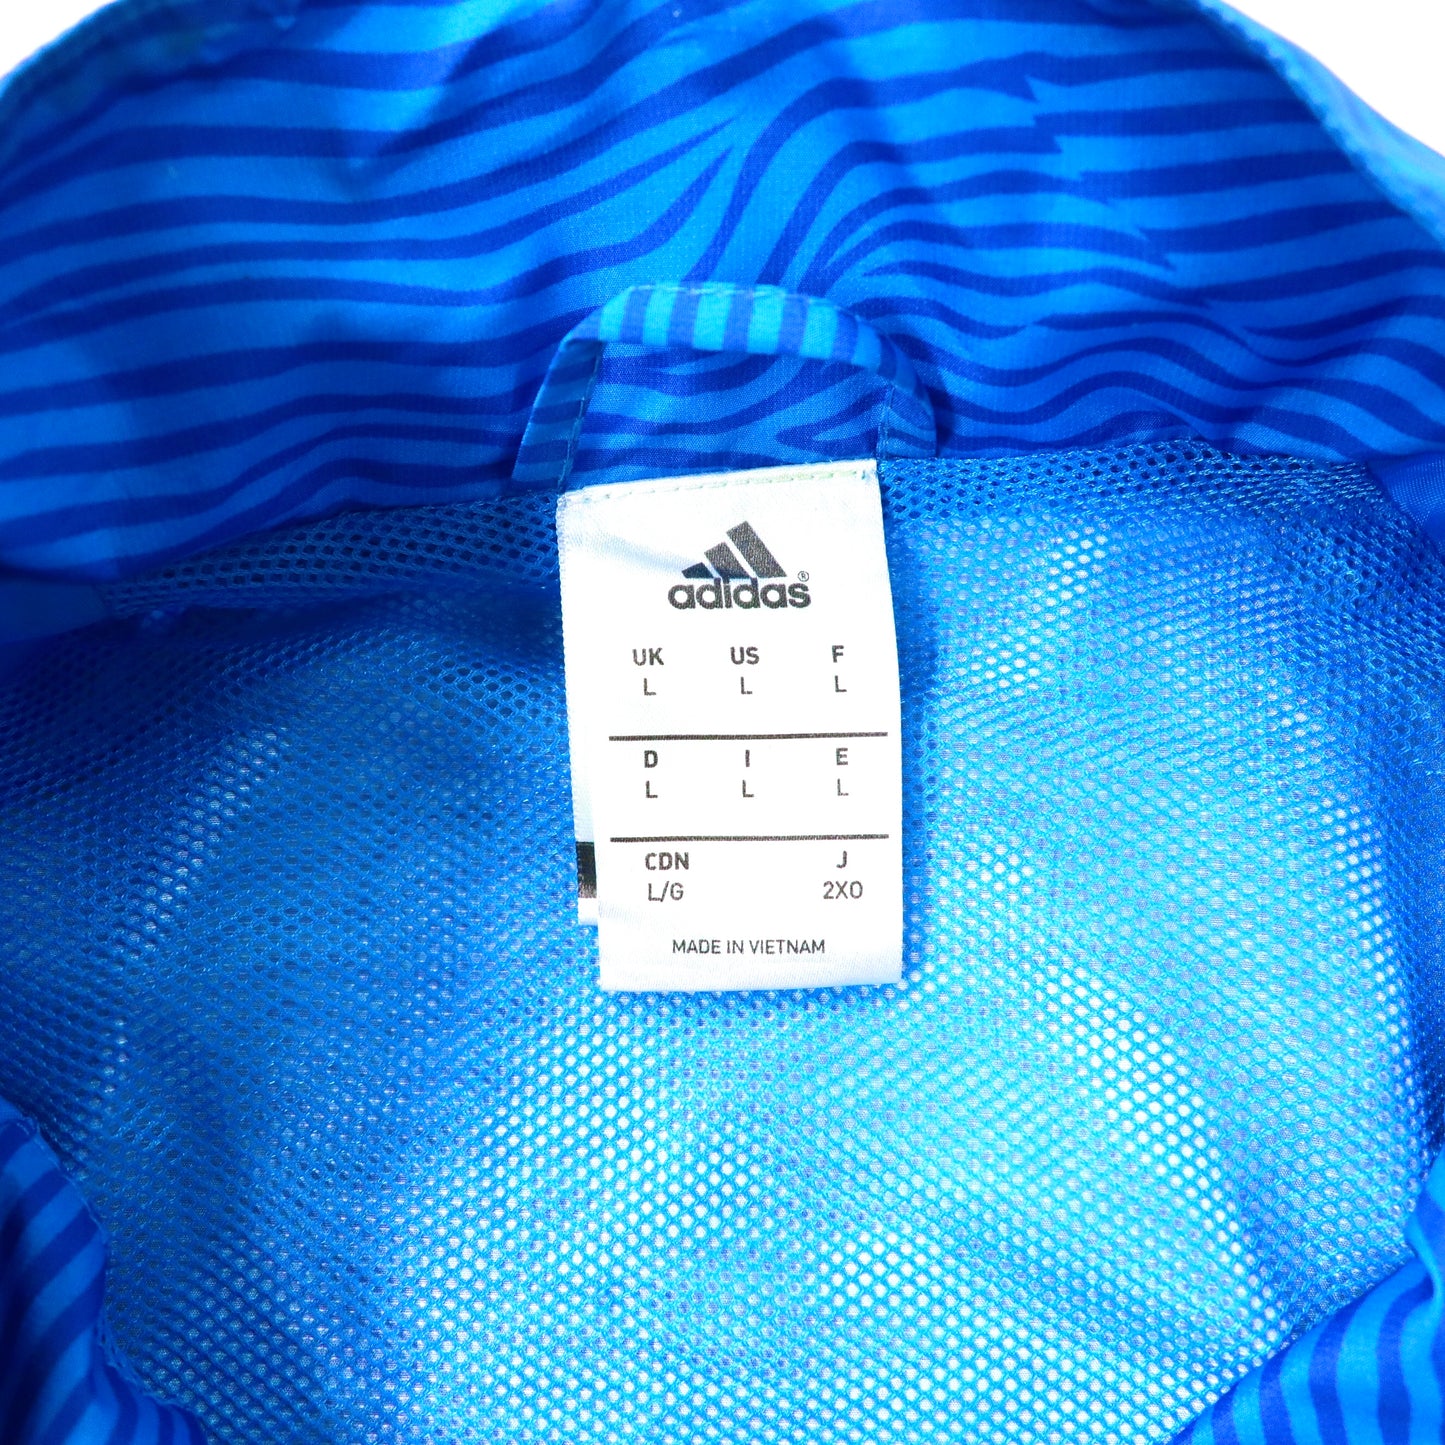 Adidas Windbreaker Jersey 2XO Blue 3 Striped Sleal Madrid UEFA